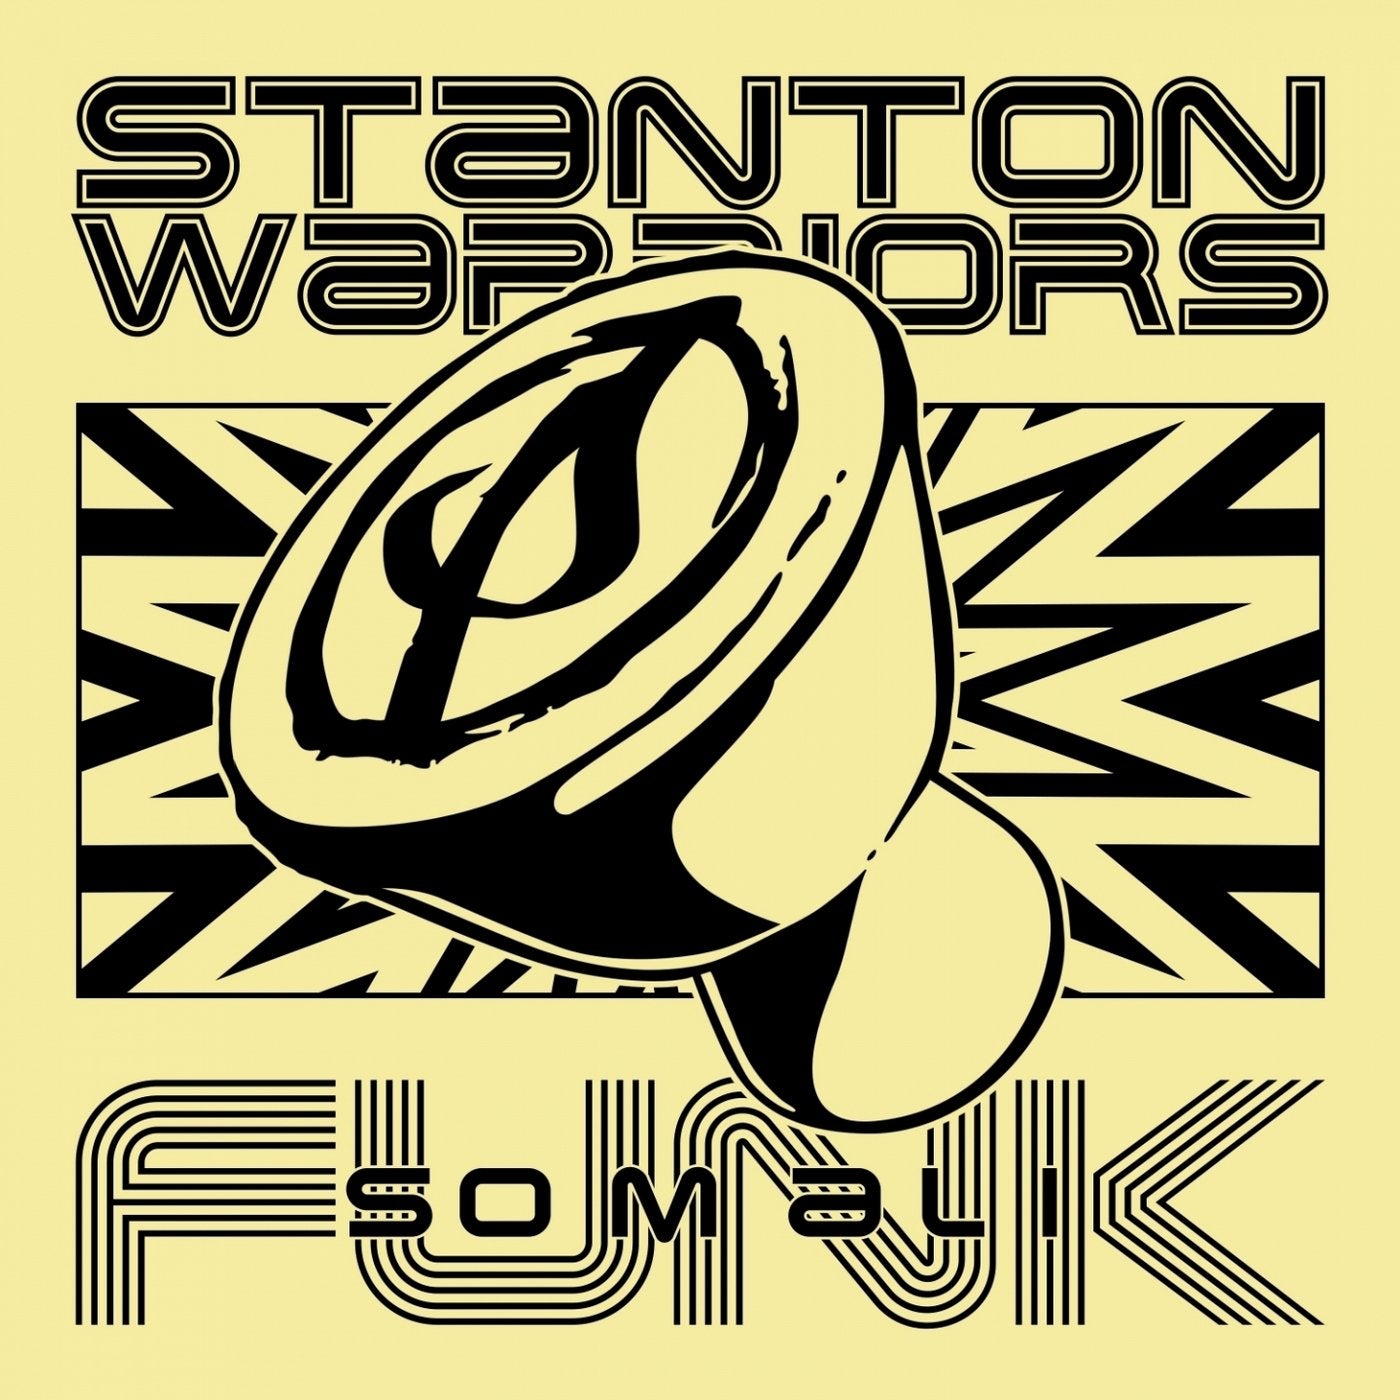 Stanton warriors. Stanton Warriors, альбомы. Stanton Warriors - Precinct. Stanton Warrior фото.